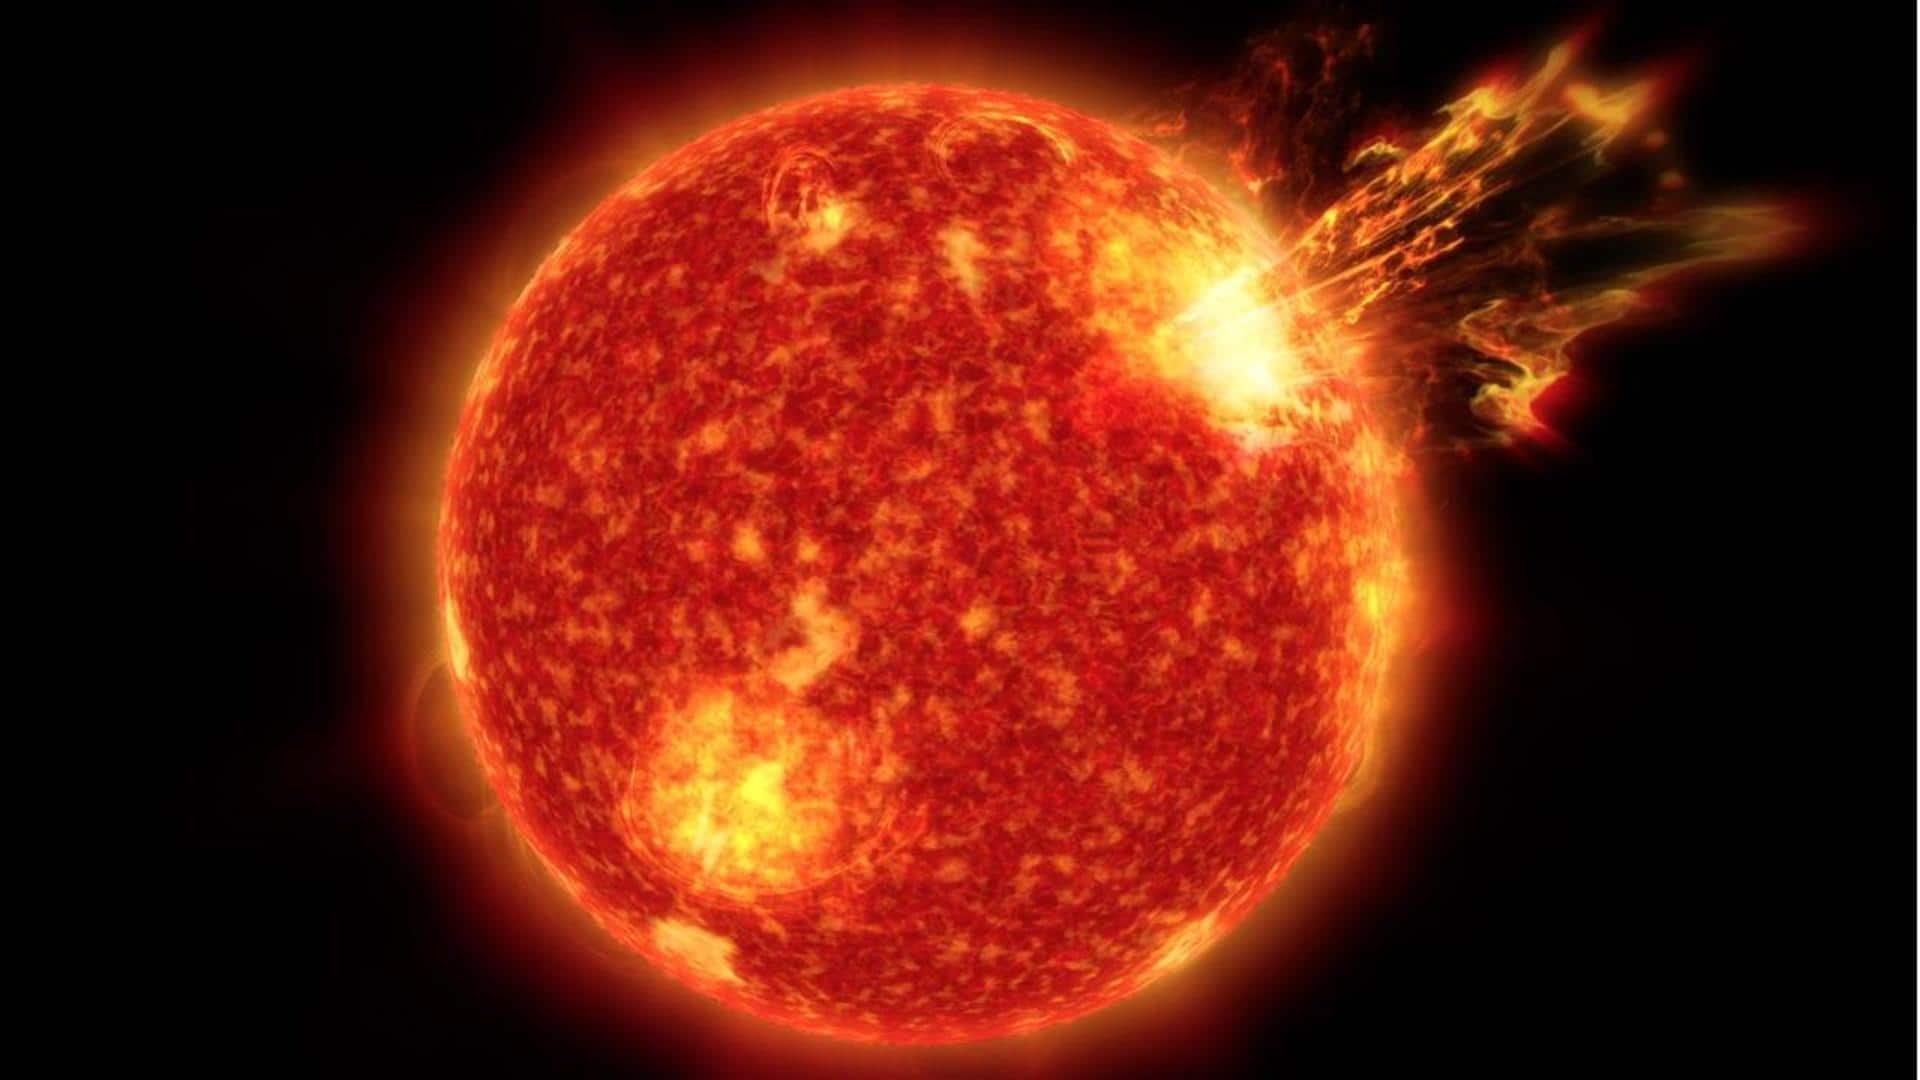 Massive sunspot has quadrupled in size raising solar flare warnings